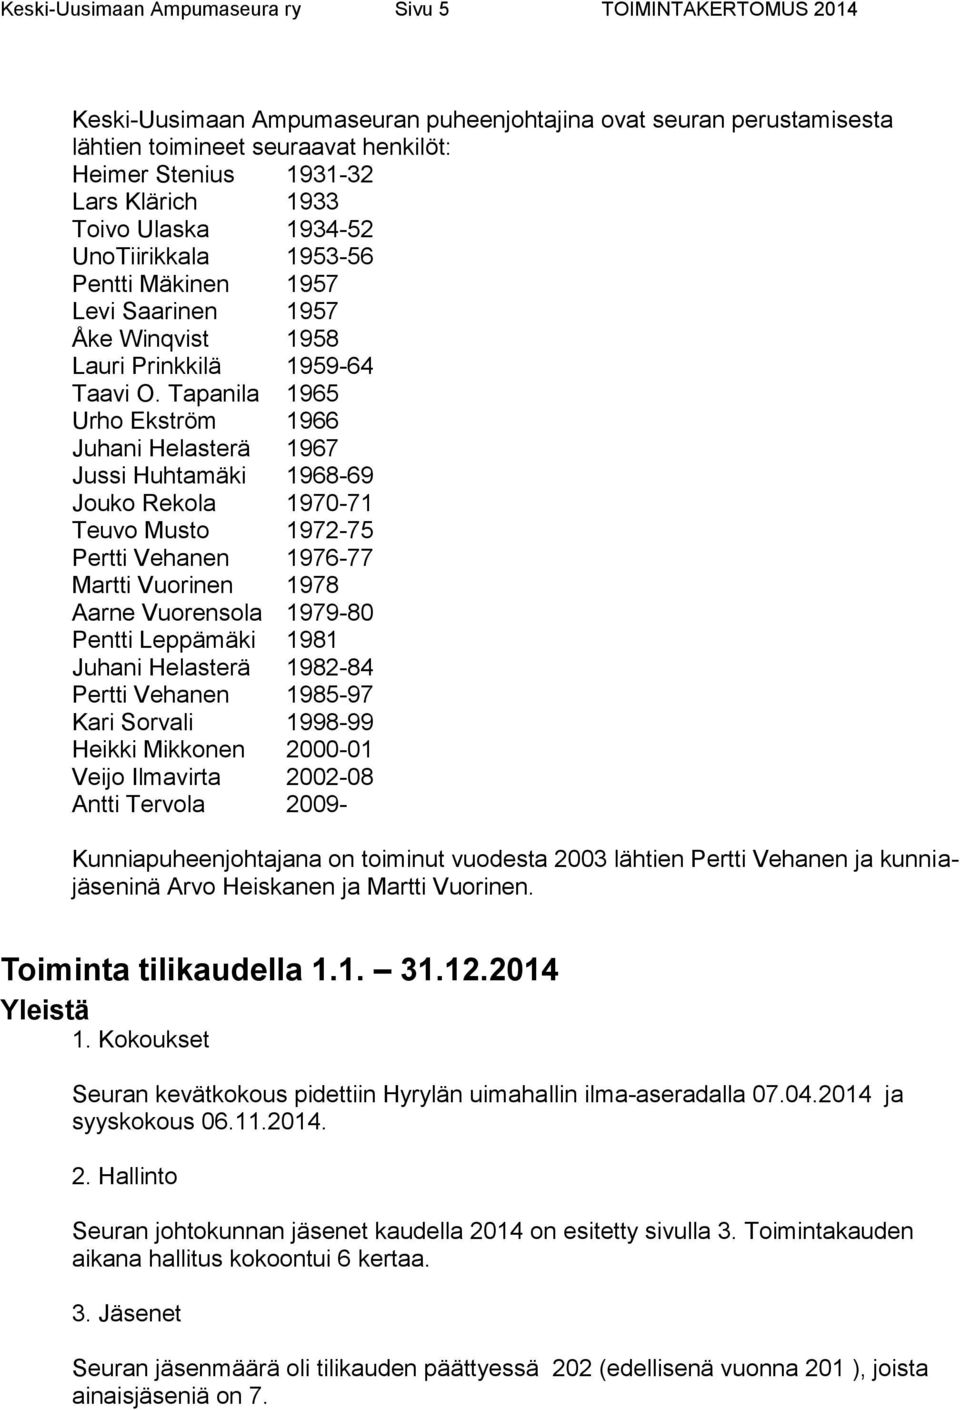 Tapanila 1965 Urho Ekström 1966 Juhani Helasterä 1967 Jussi Huhtamäki 1968-69 Jouko Rekola 1970-71 Teuvo Musto 1972-75 Pertti Vehanen 1976-77 Martti Vuorinen 1978 Aarne Vuorensola 1979-80 Pentti